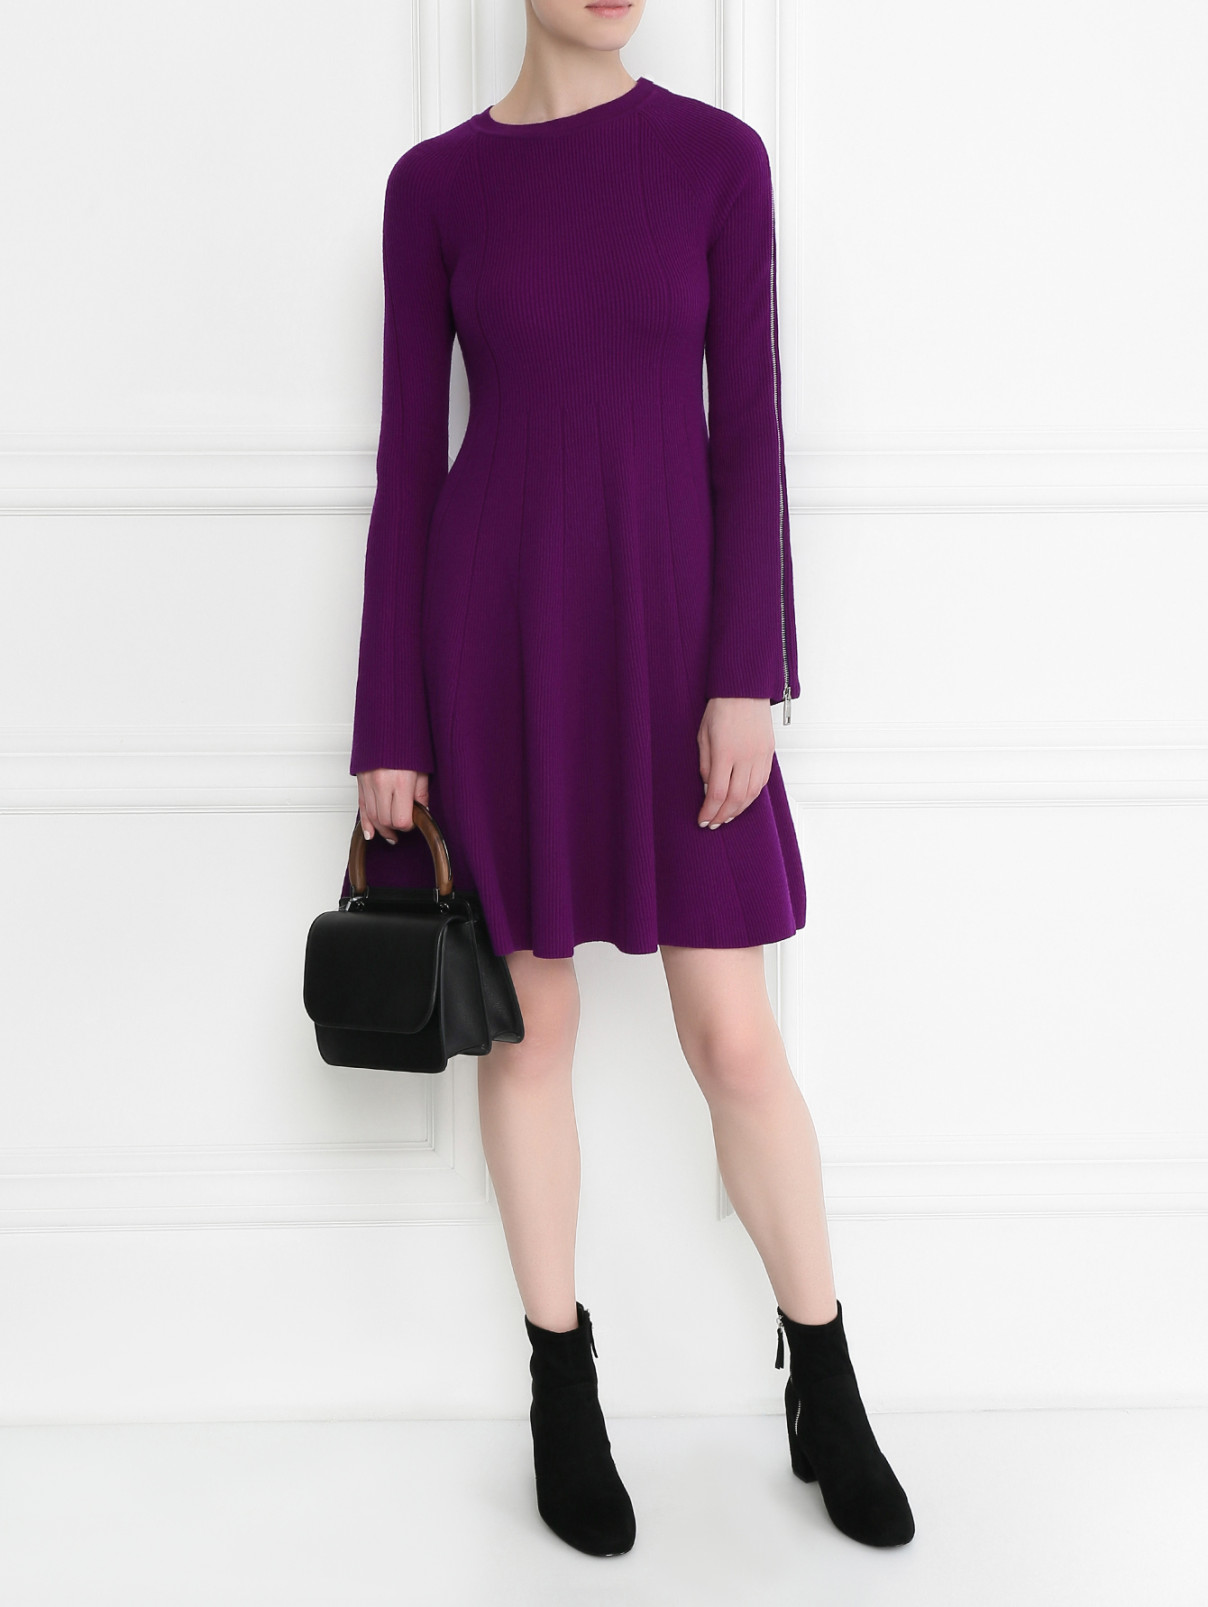 Платье-мини из шерсти расклешенного кроя Sportmax  –  Модель Общий вид  – Цвет:  Фиолетовый